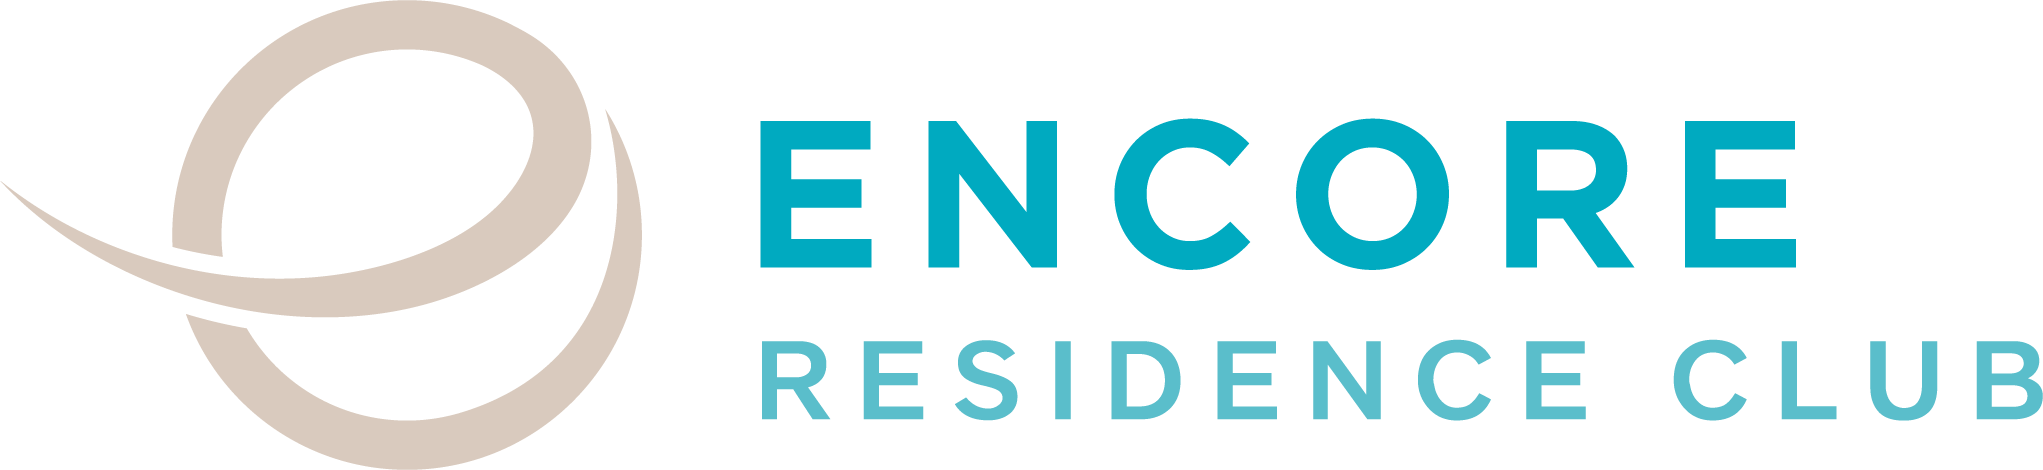 Encore Residence Club